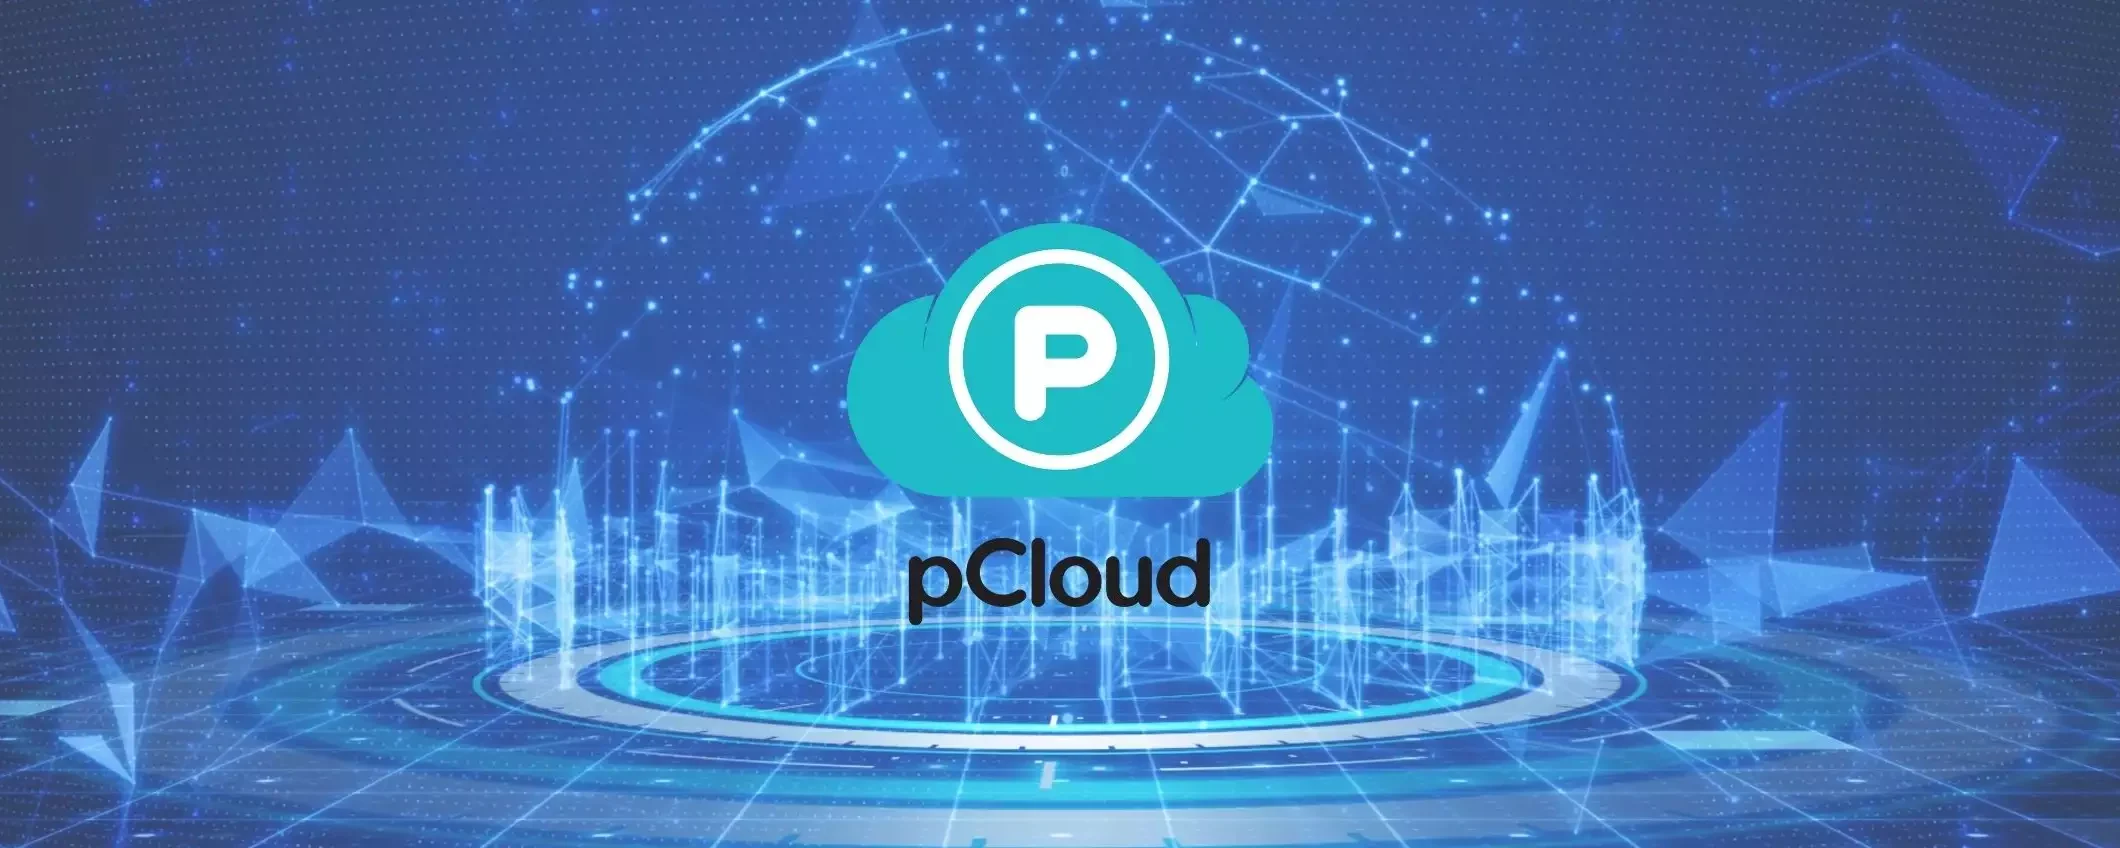 pCloud: il cloud senza abbonamento con uno sconto imperdibile del 33%